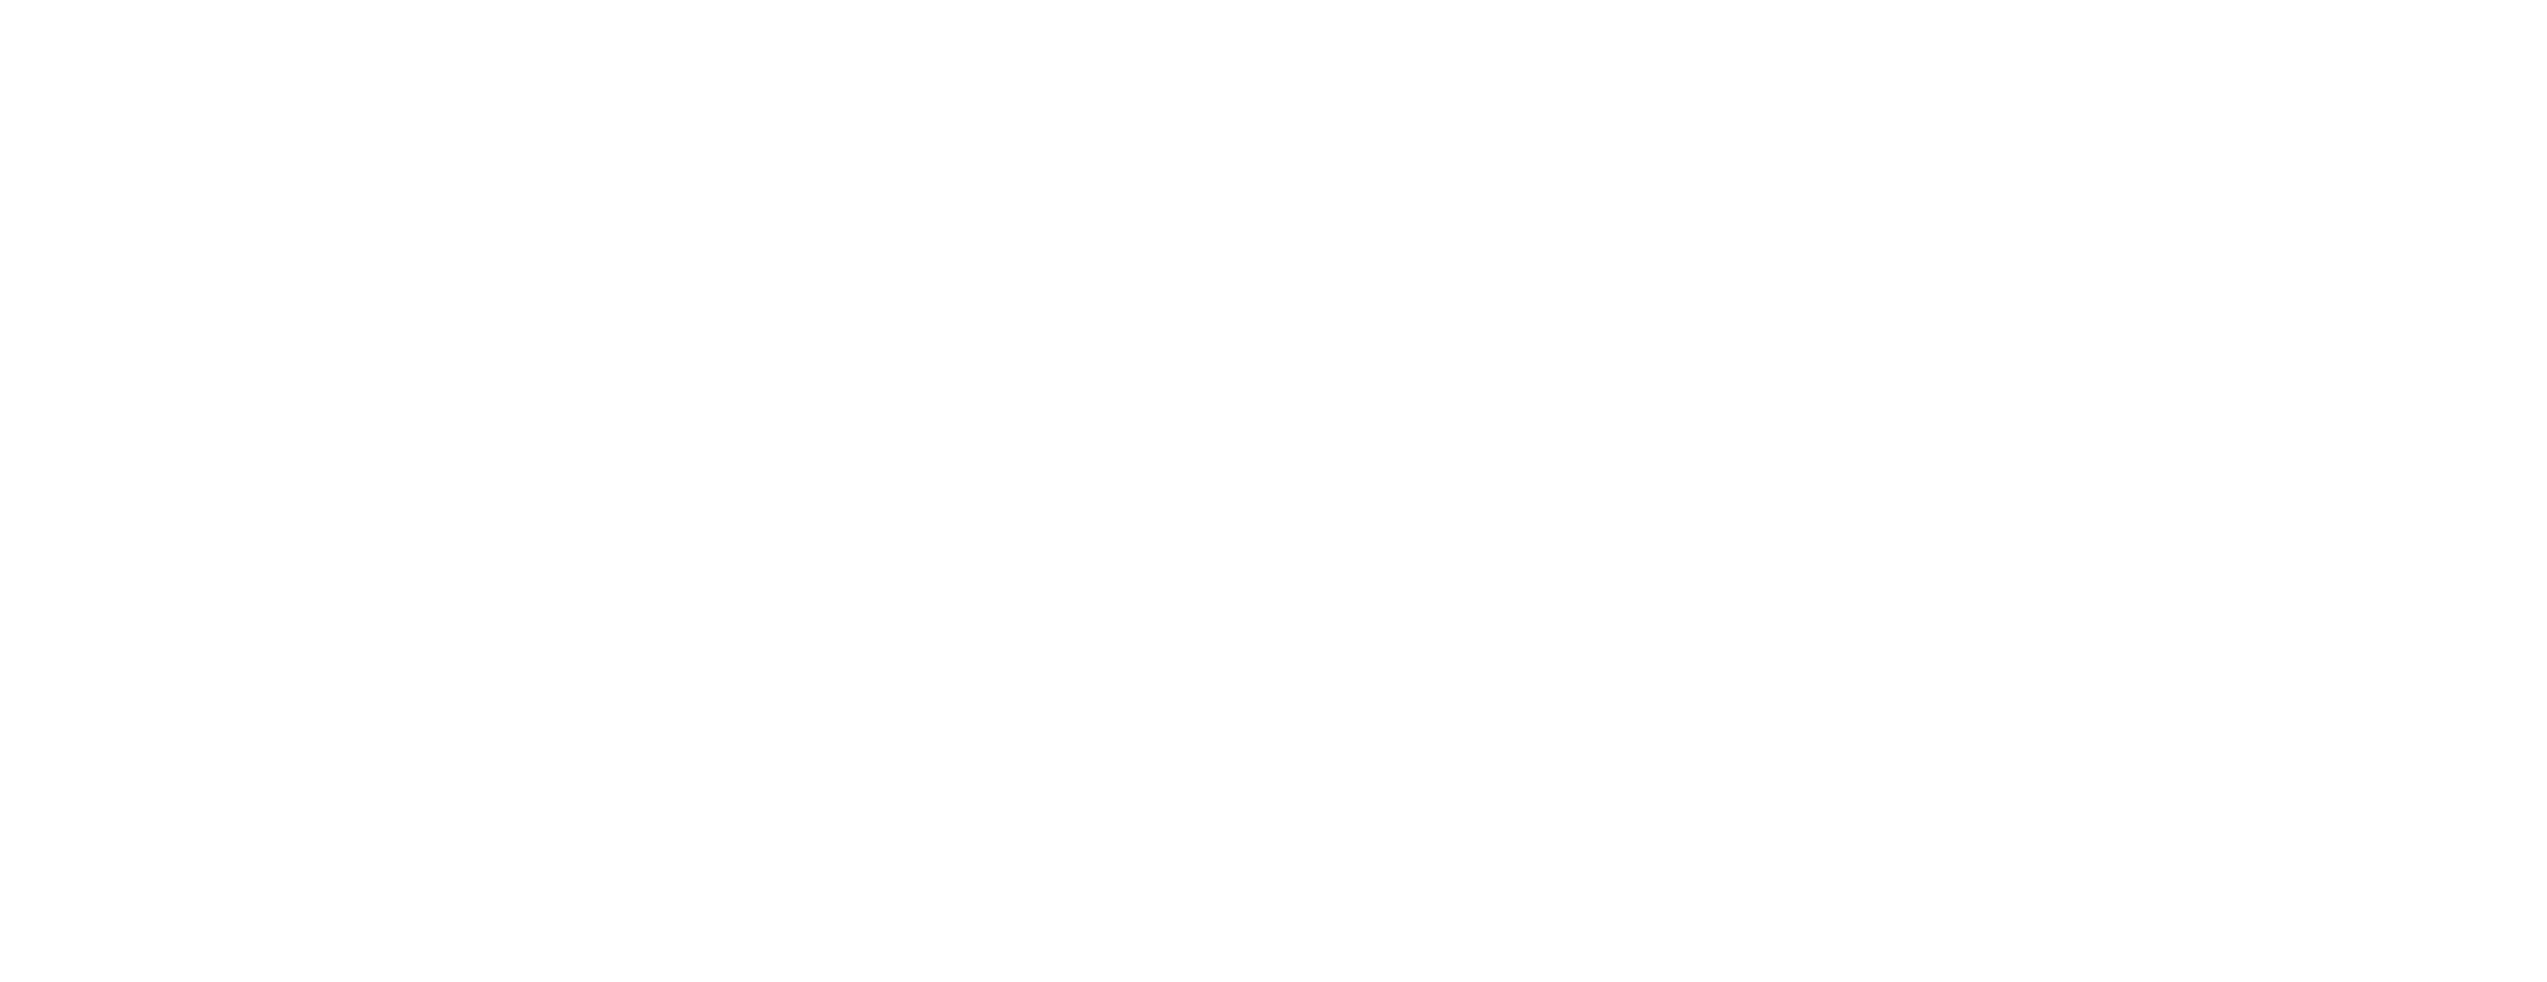 沖縄本島一周サイクリング 312km